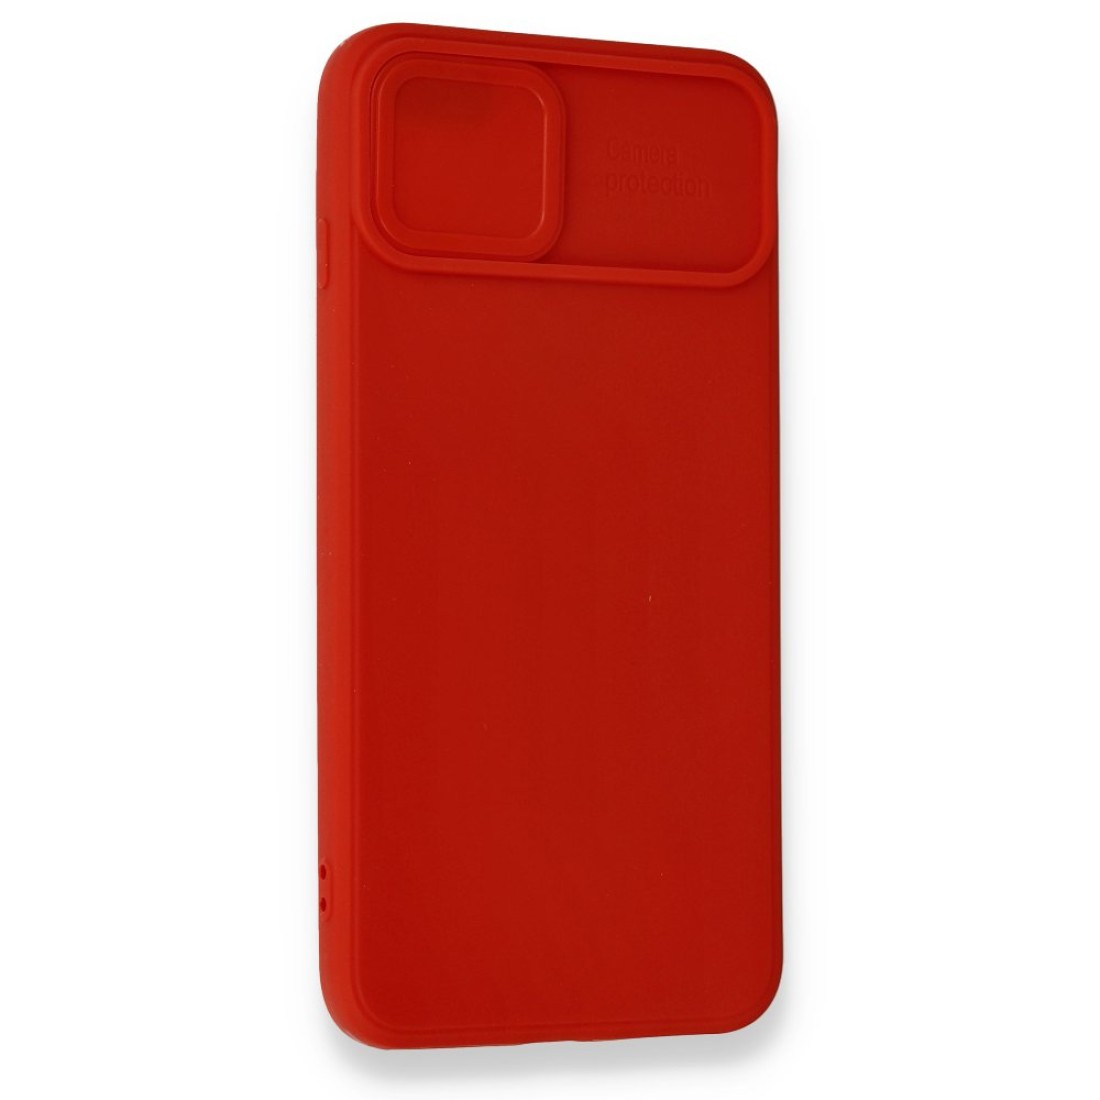 Apple iPhone 7 Plus Kılıf Color Lens Silikon - Kırmızı